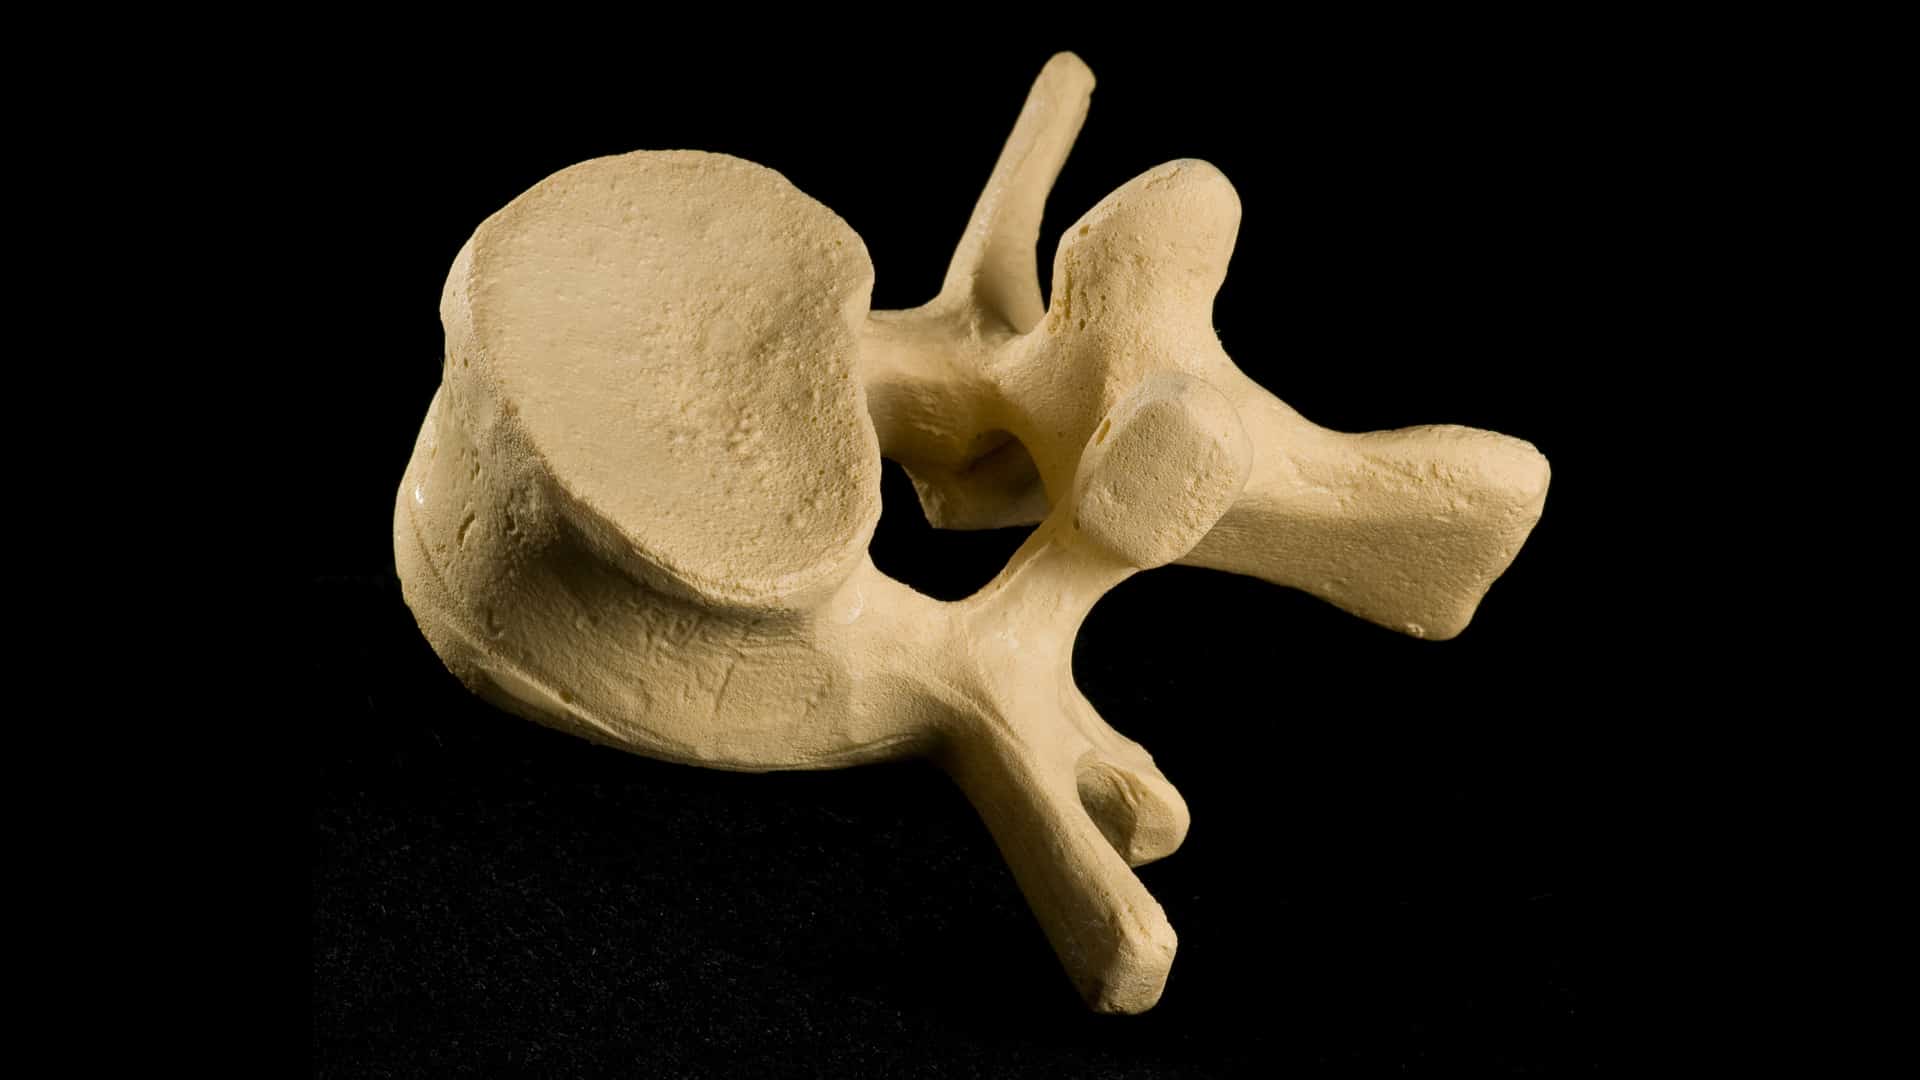 Almendras para la osteoporosis